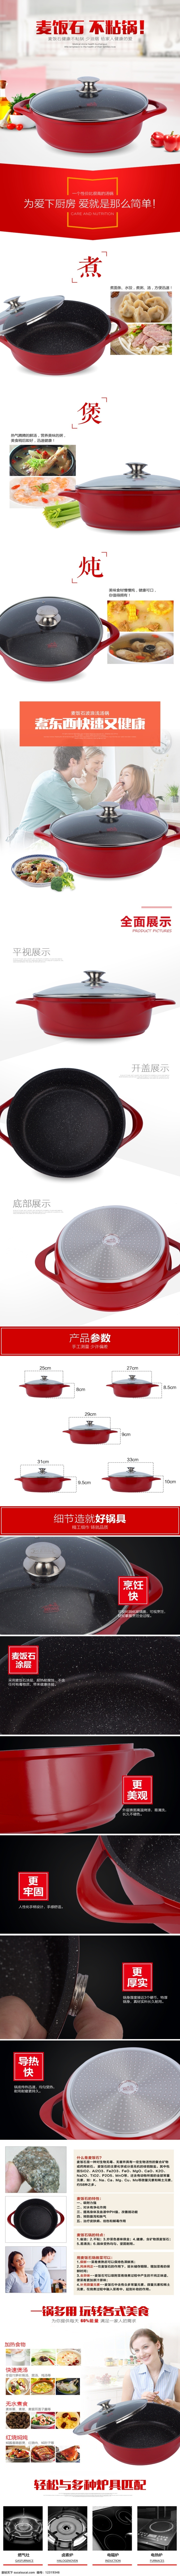 红色 麦饭石 汤锅 详情 锅具 厨房用品 家用电器 淘宝界面设计